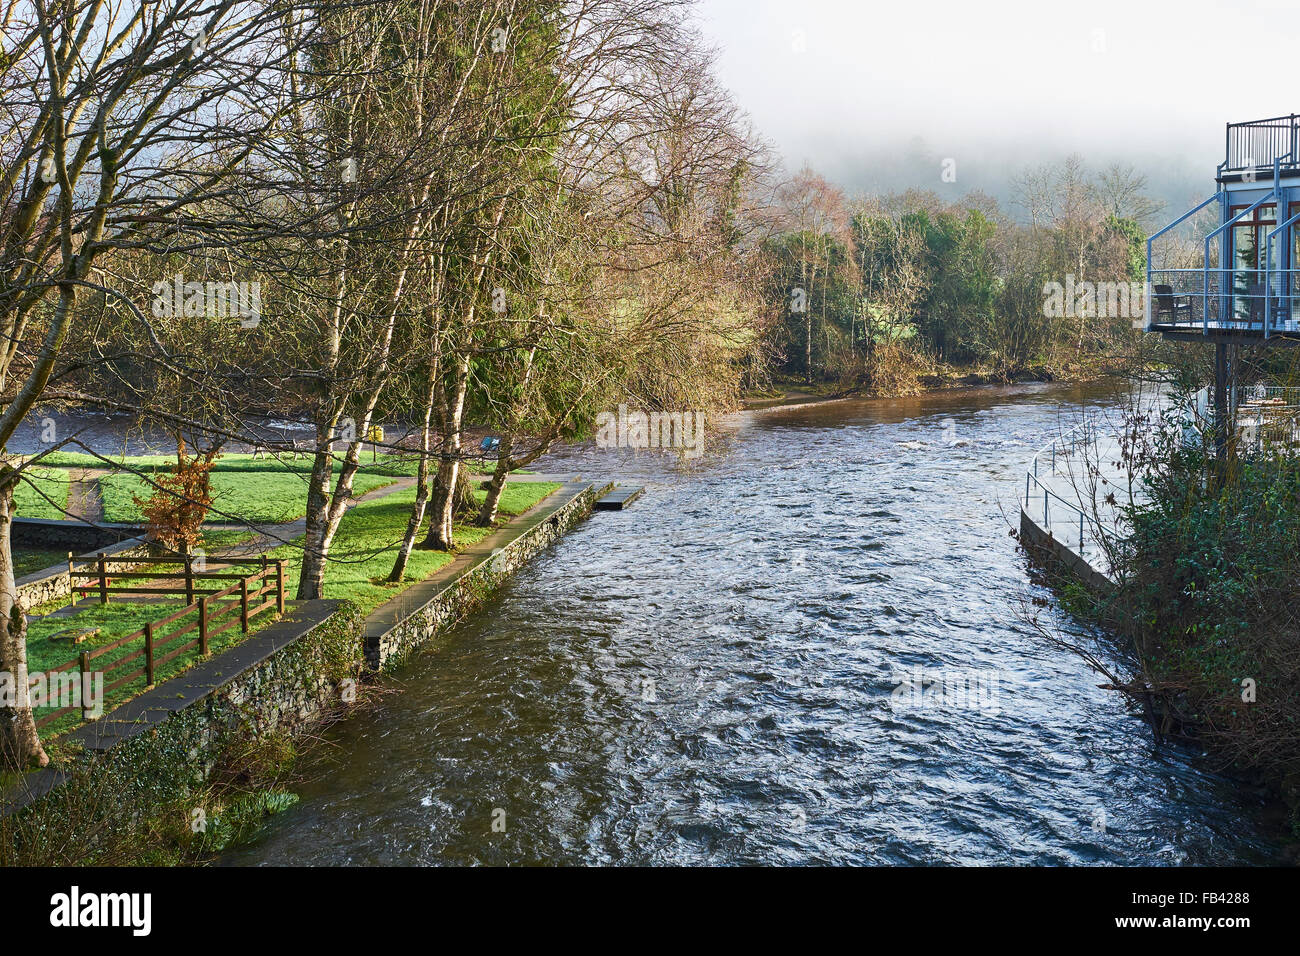 Das Treffen der Gewässer, County Wicklow, Ireland, Marken der Stelle, wo River Avonmore und Avonbeg verbinden. Stockfoto